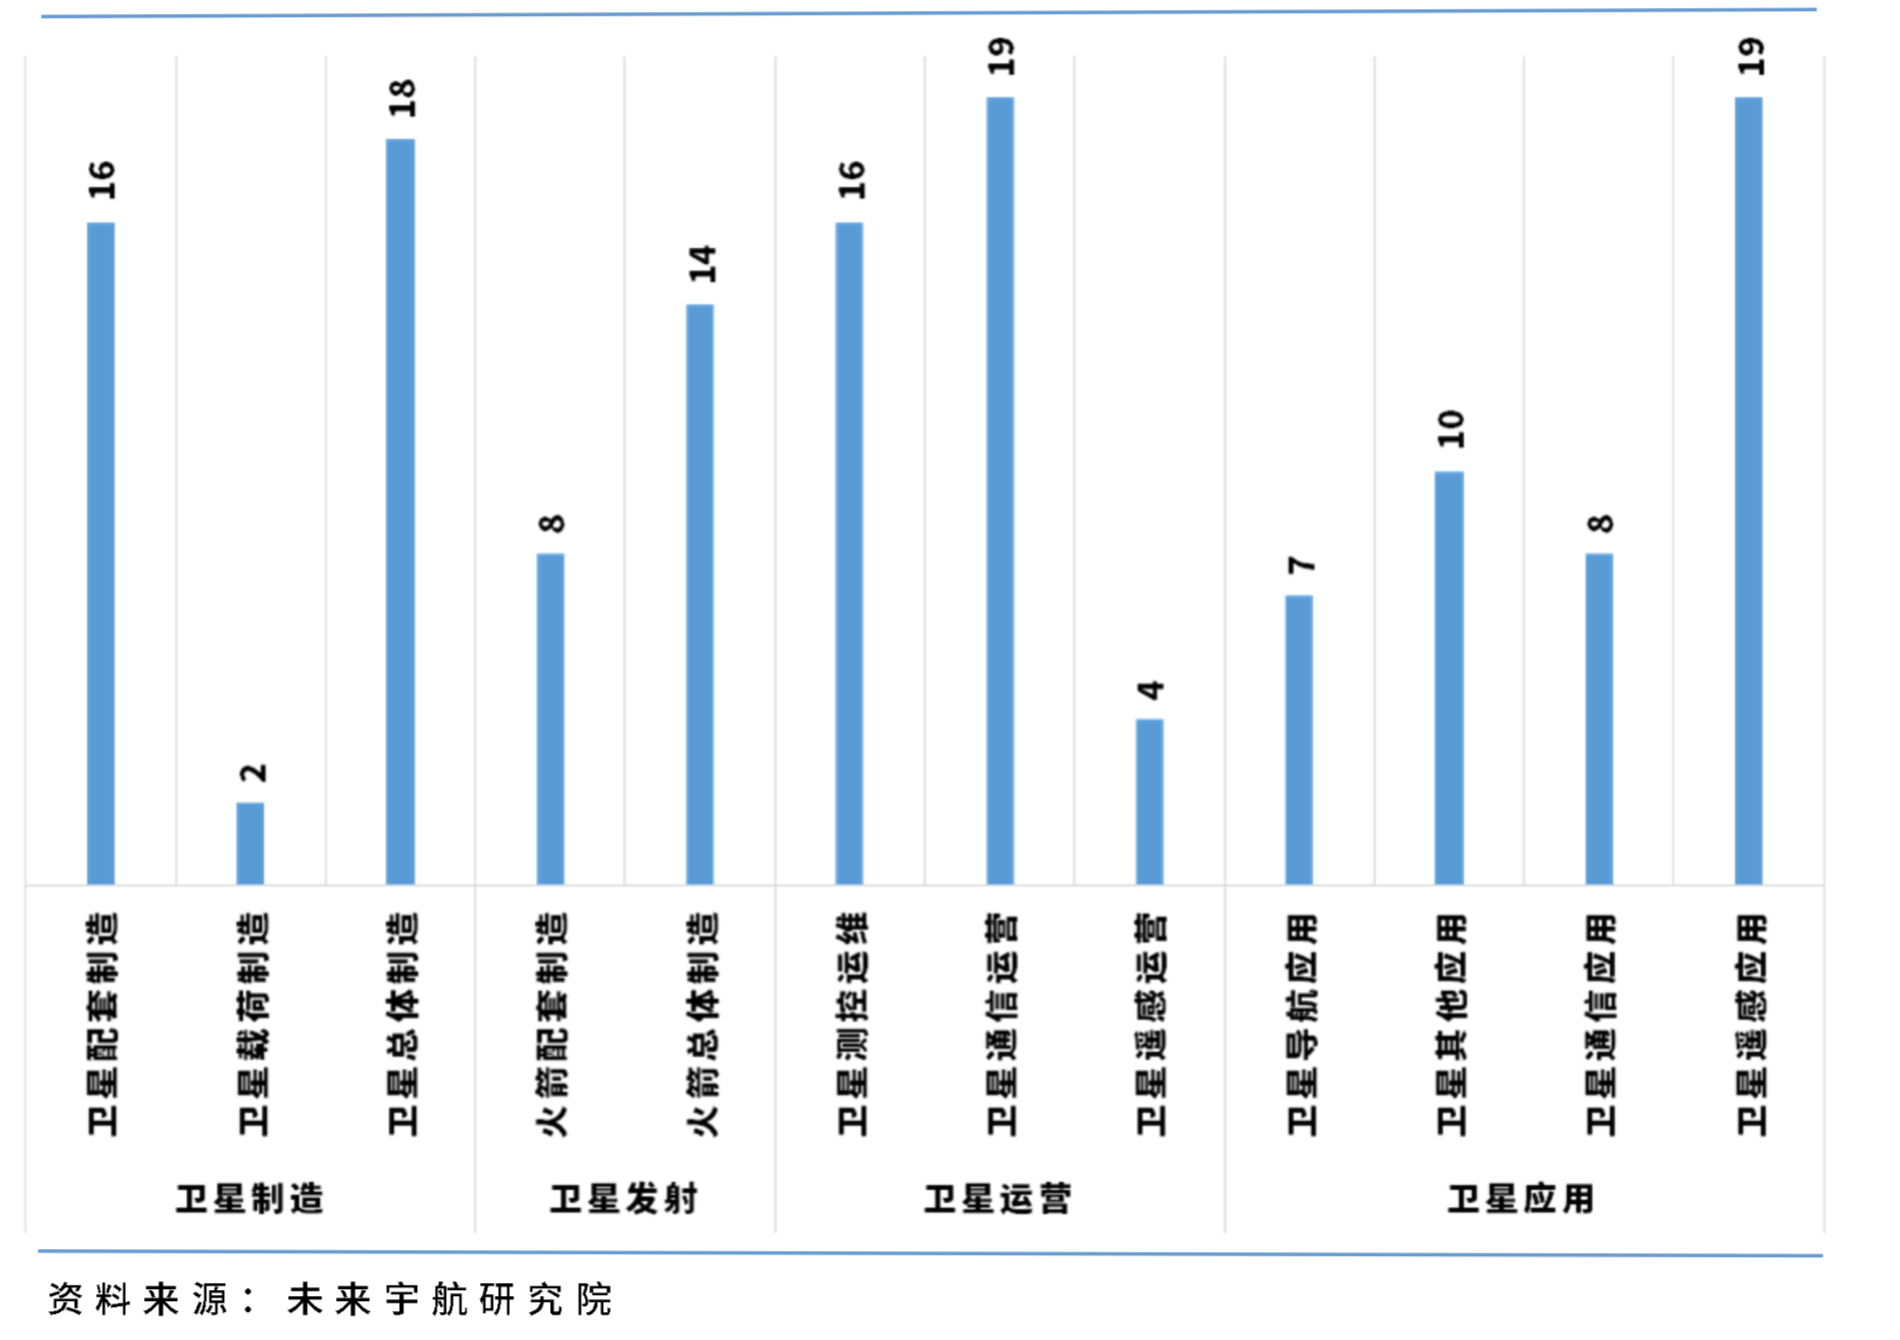 中国民营航天企业达123家 占国内商业航天公司近九成